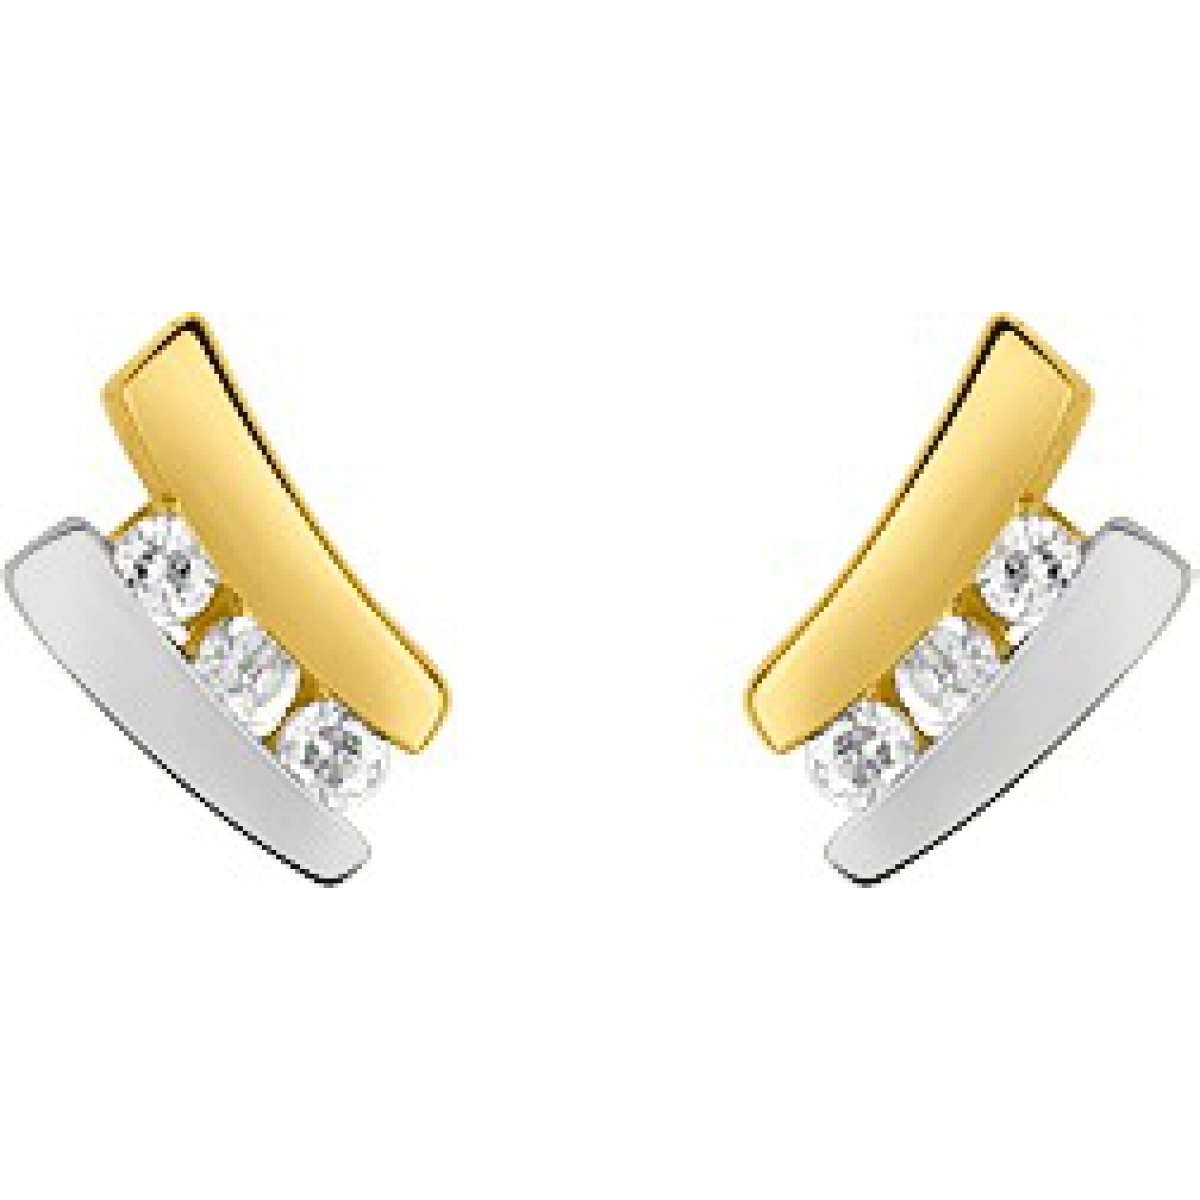 Earrings pair w. cz 9K 2TG  Lua Blanca  29SJ61BZ.0